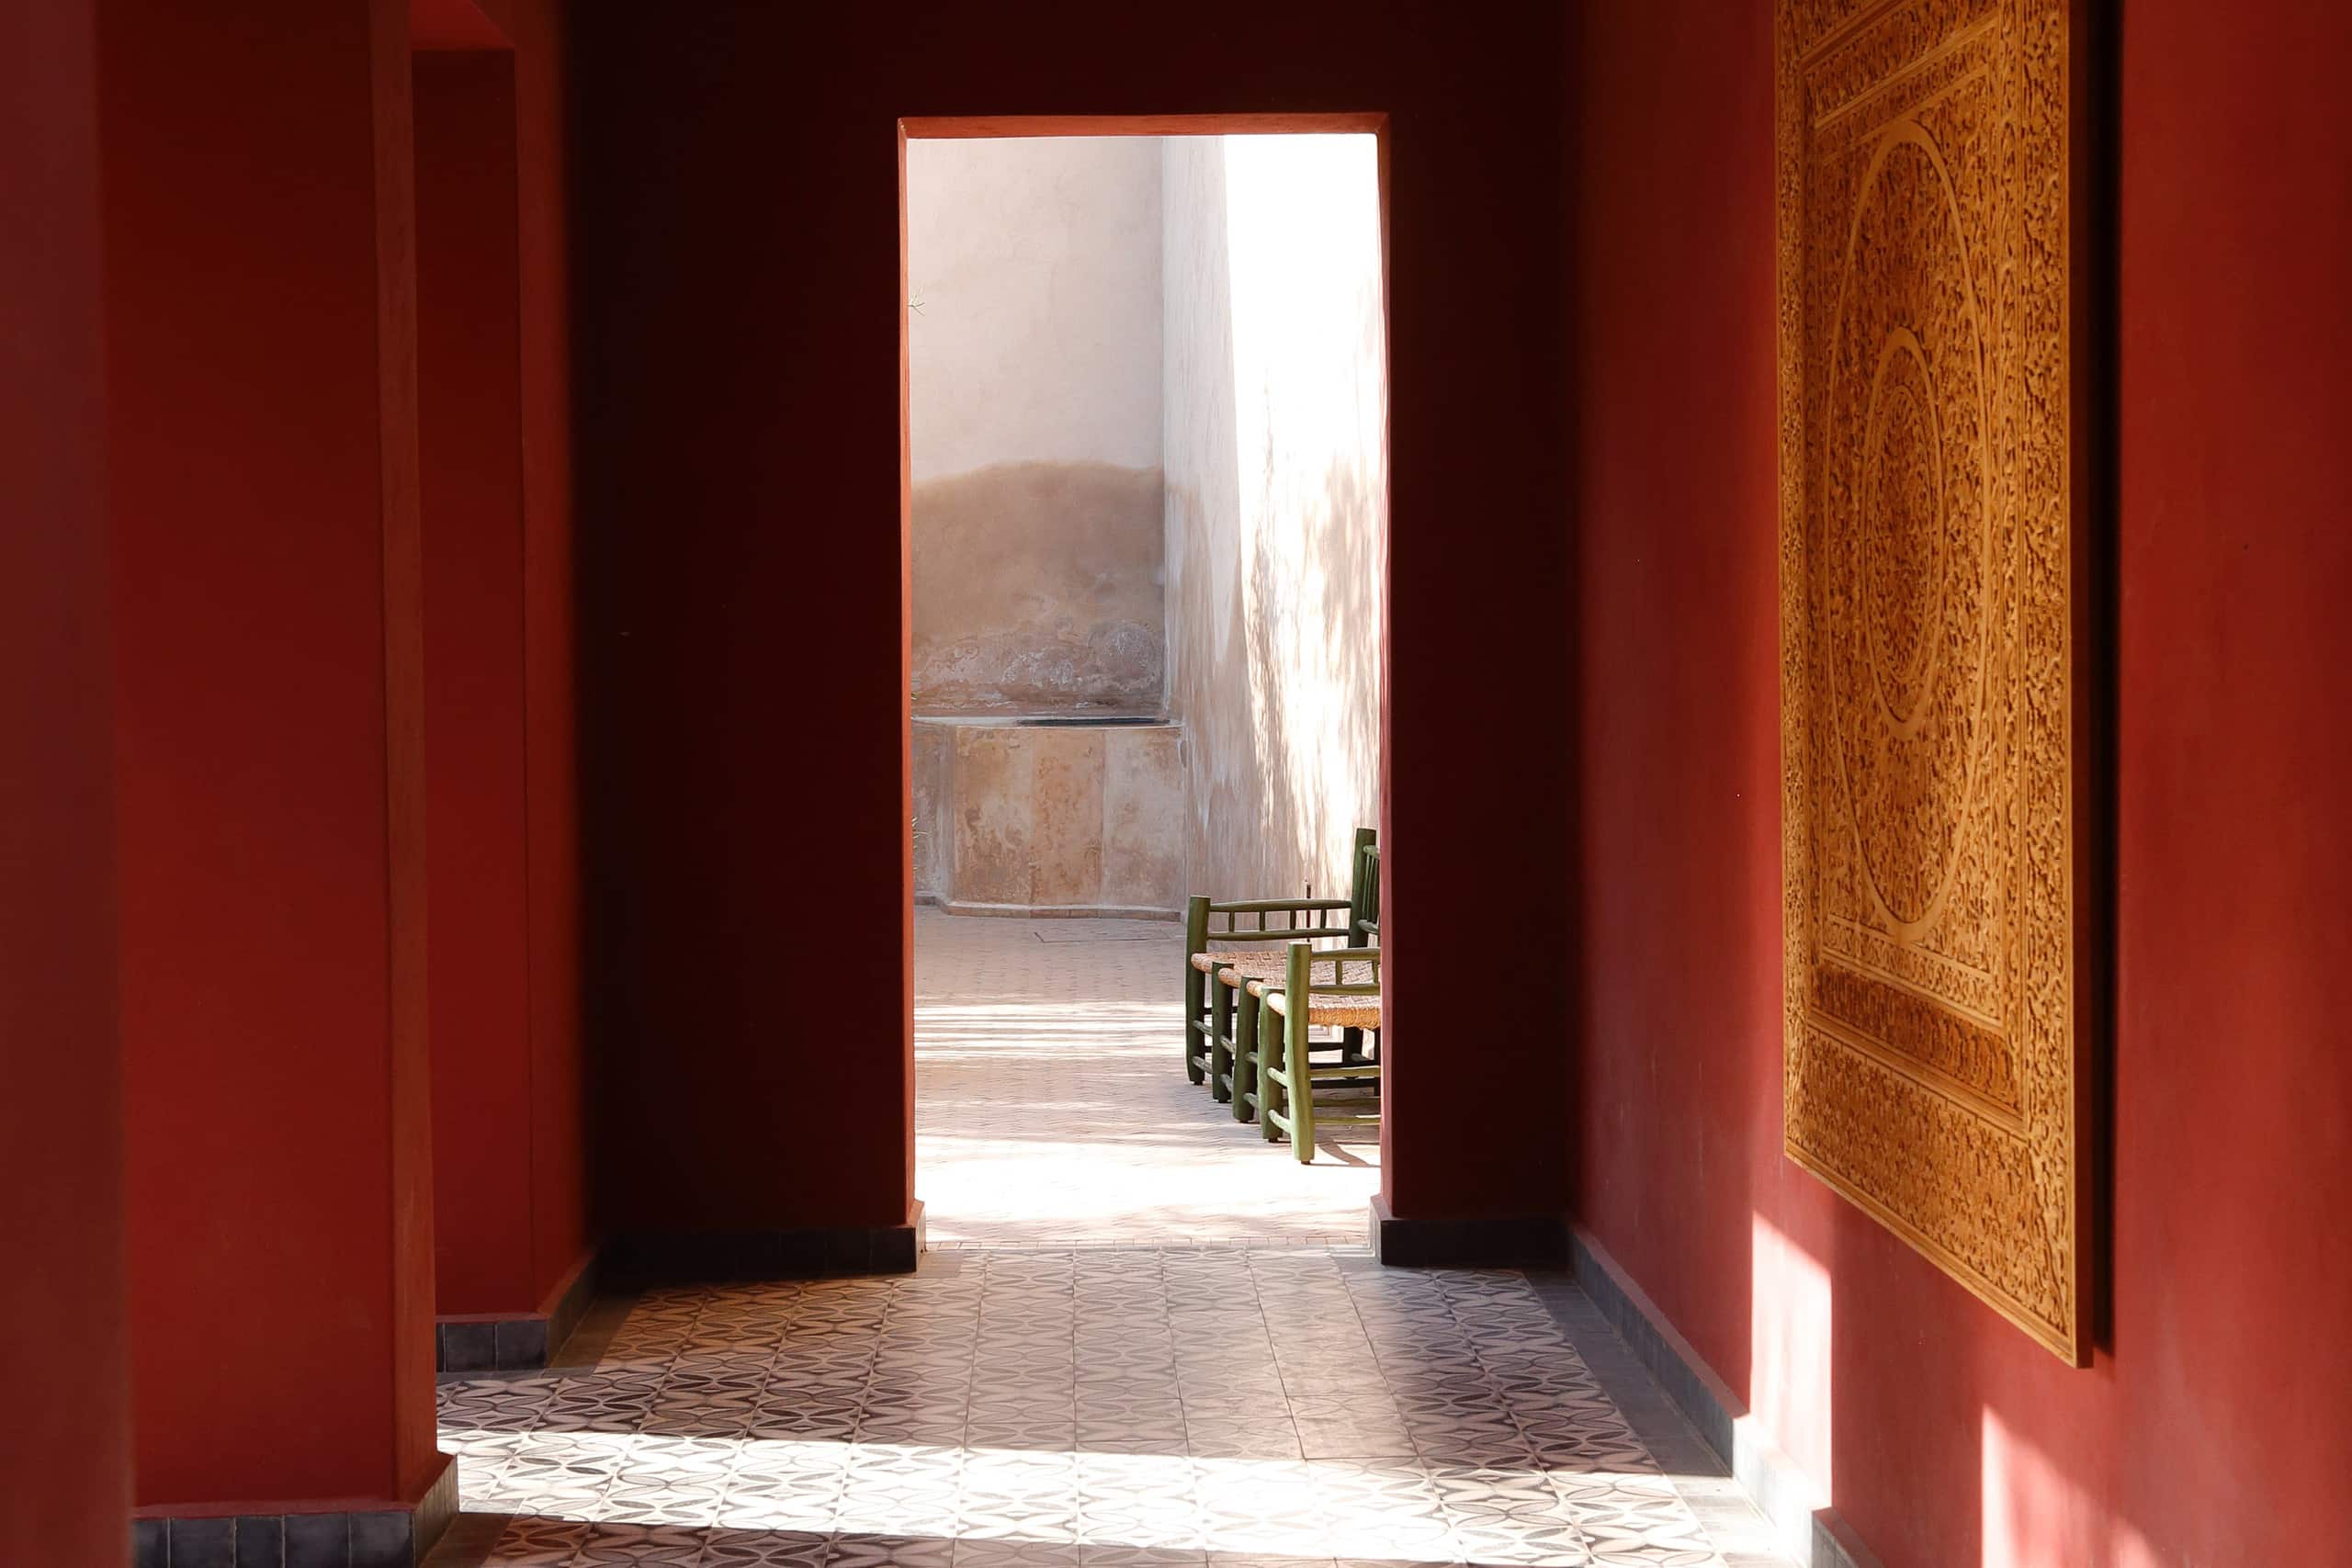 Smuk gang og bænk i Marokko